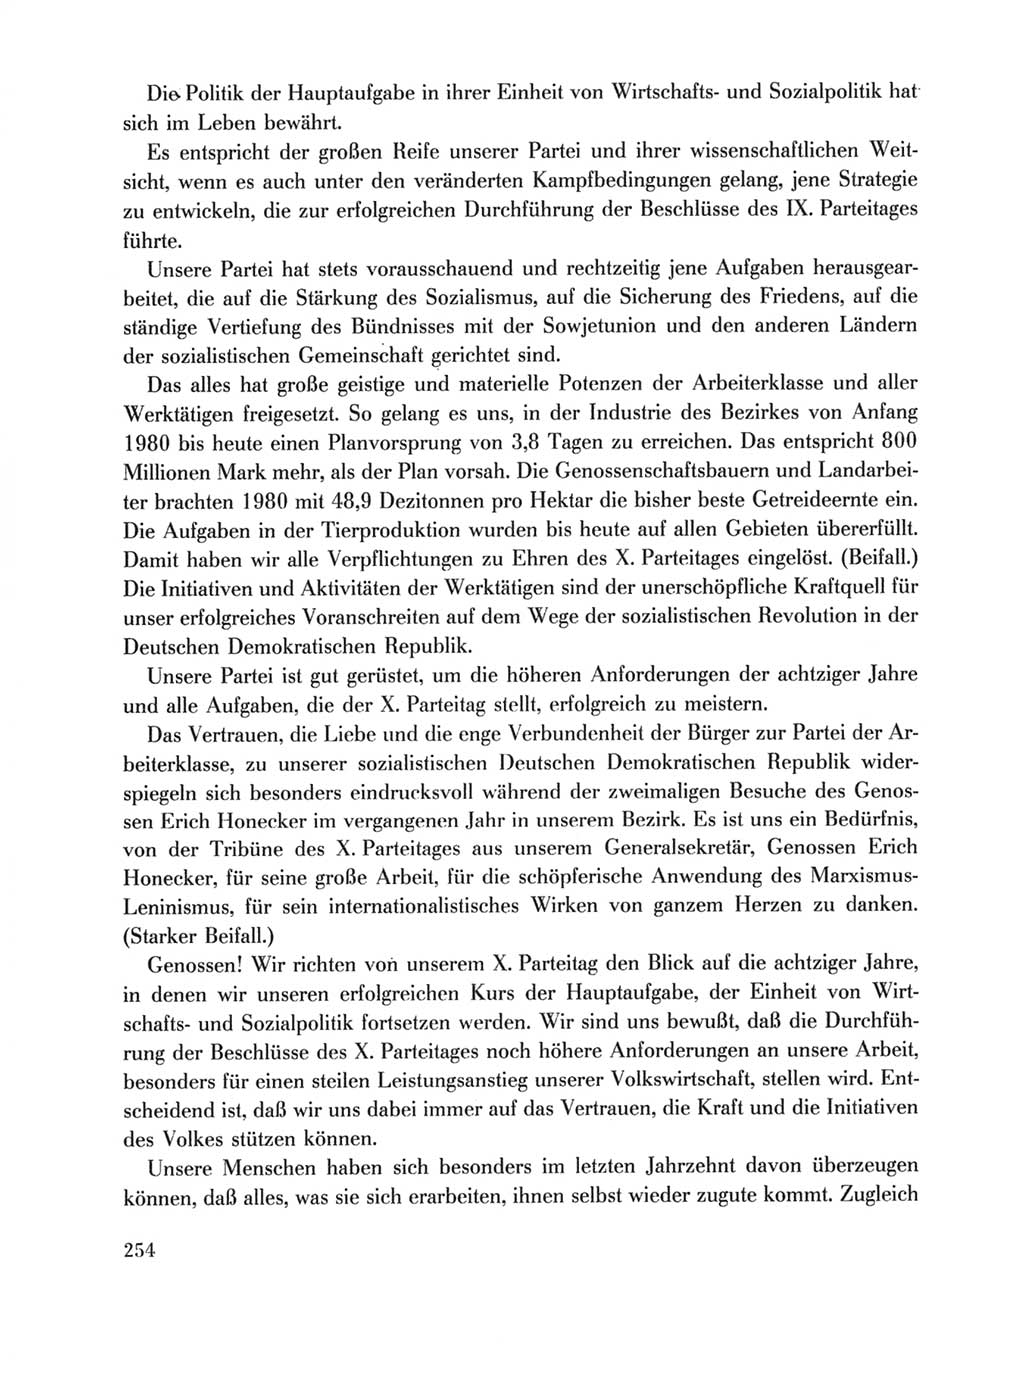 Protokoll der Verhandlungen des Ⅹ. Parteitages der Sozialistischen Einheitspartei Deutschlands (SED) [Deutsche Demokratische Republik (DDR)] 1981, Band 1, Seite 254 (Prot. Verh. Ⅹ. PT SED DDR 1981, Bd. 1, S. 254)